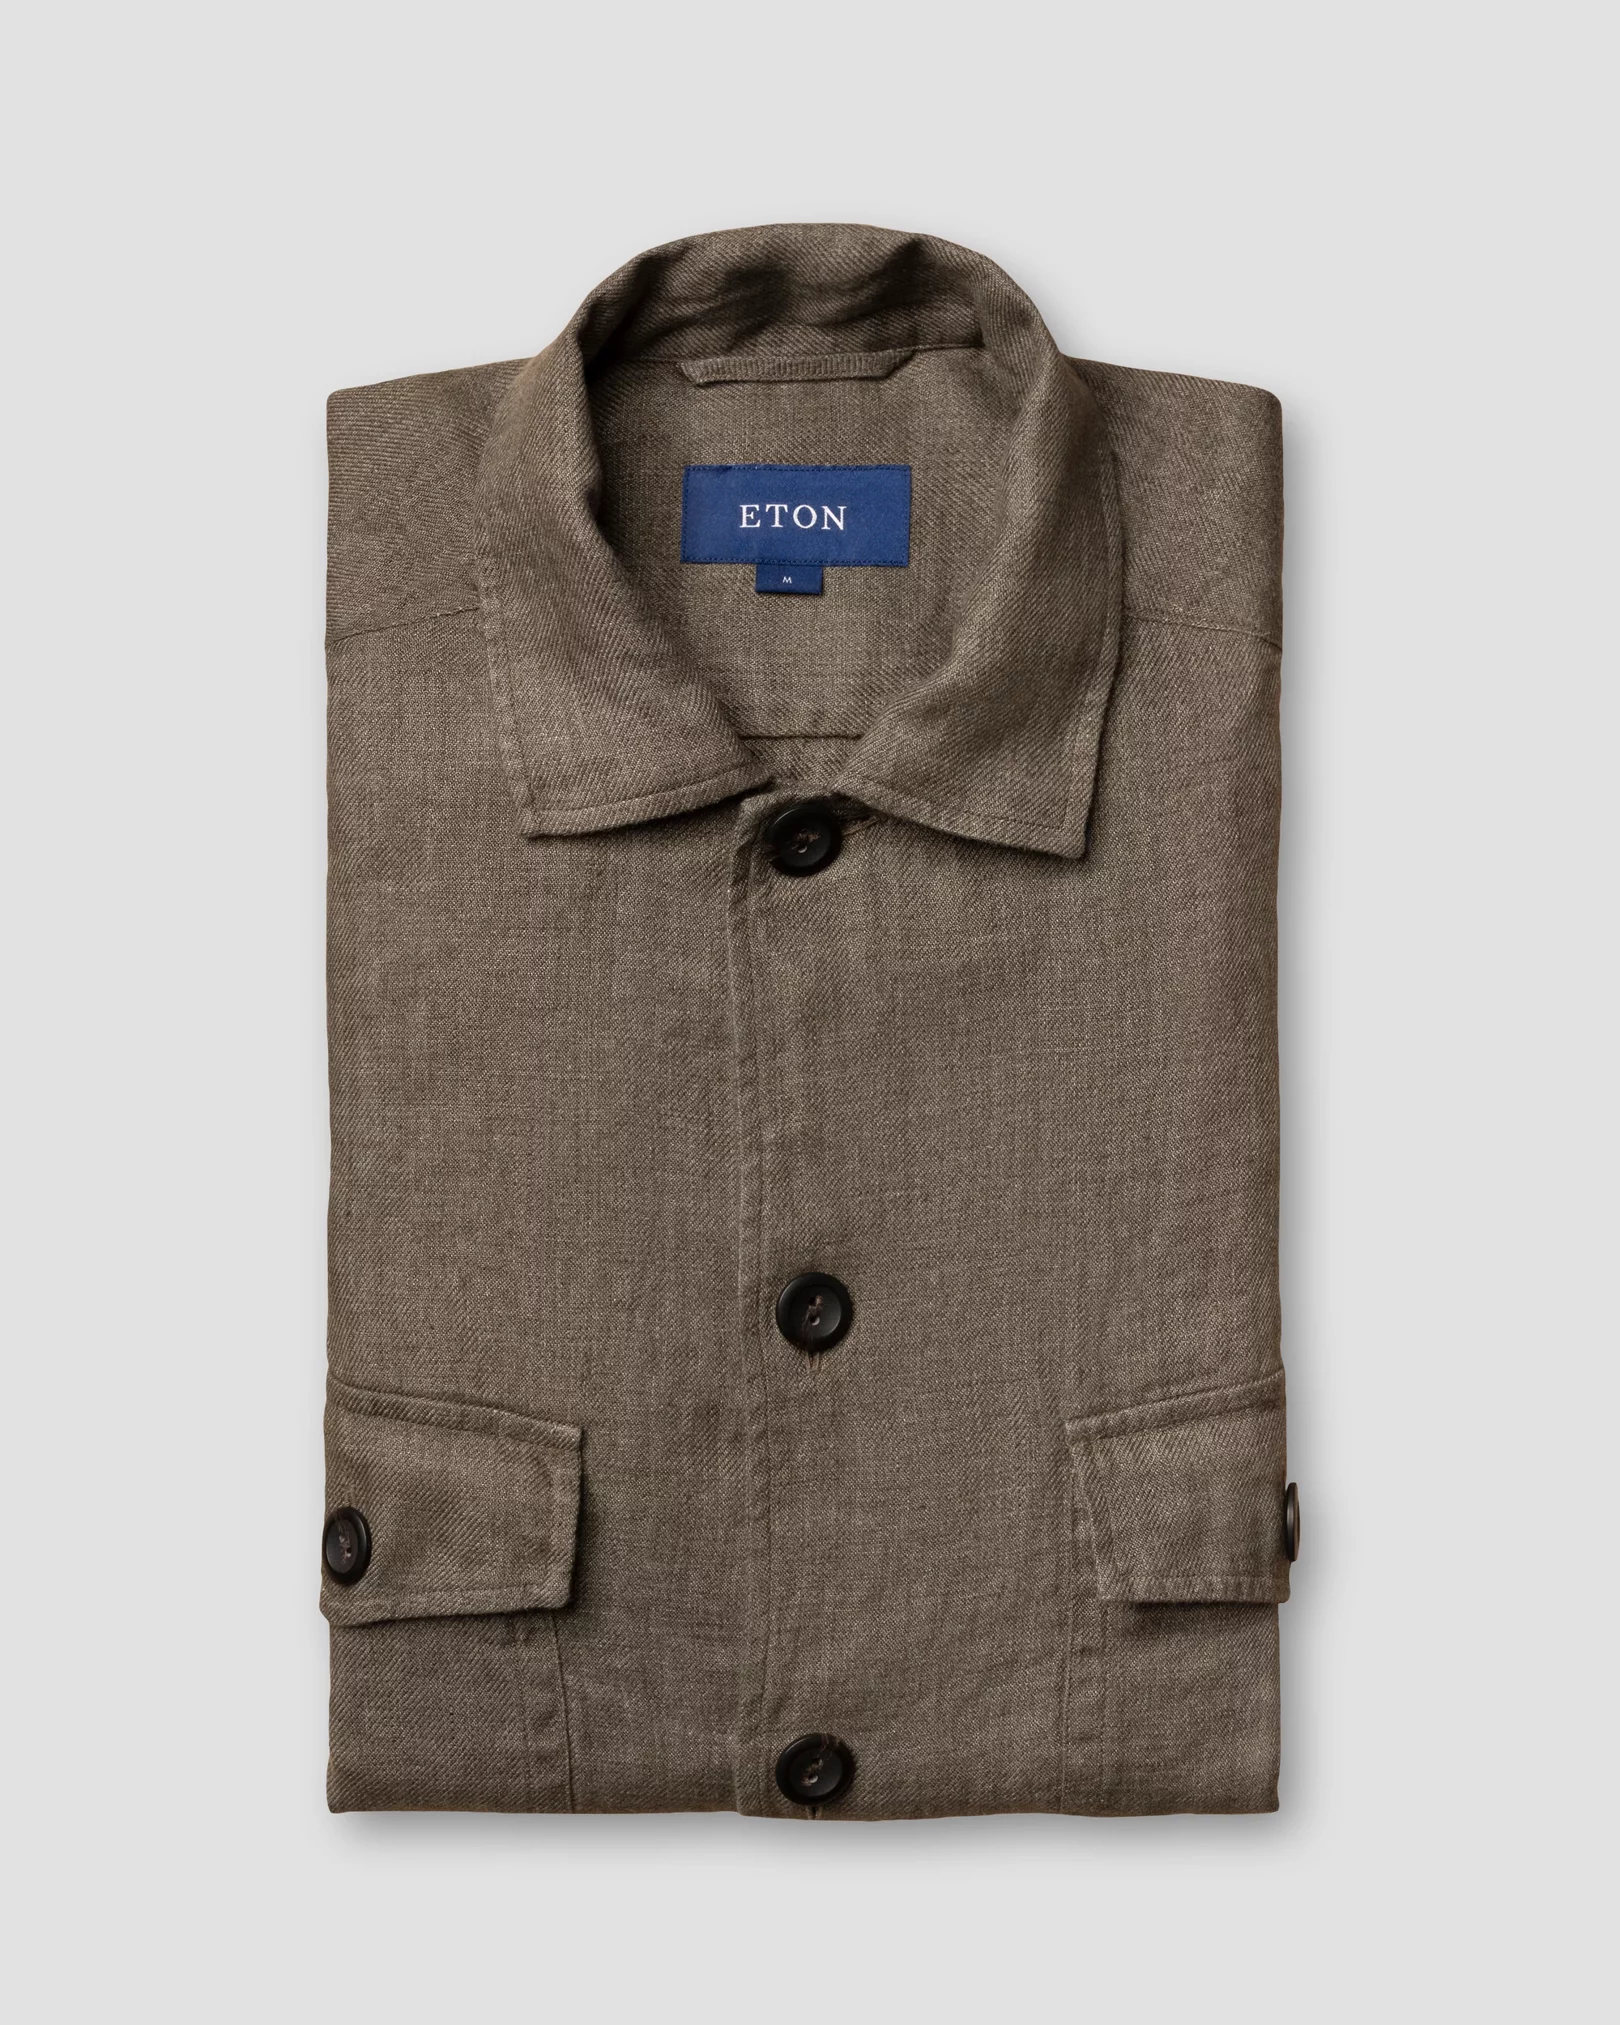 Eton - dark brown linen shirt